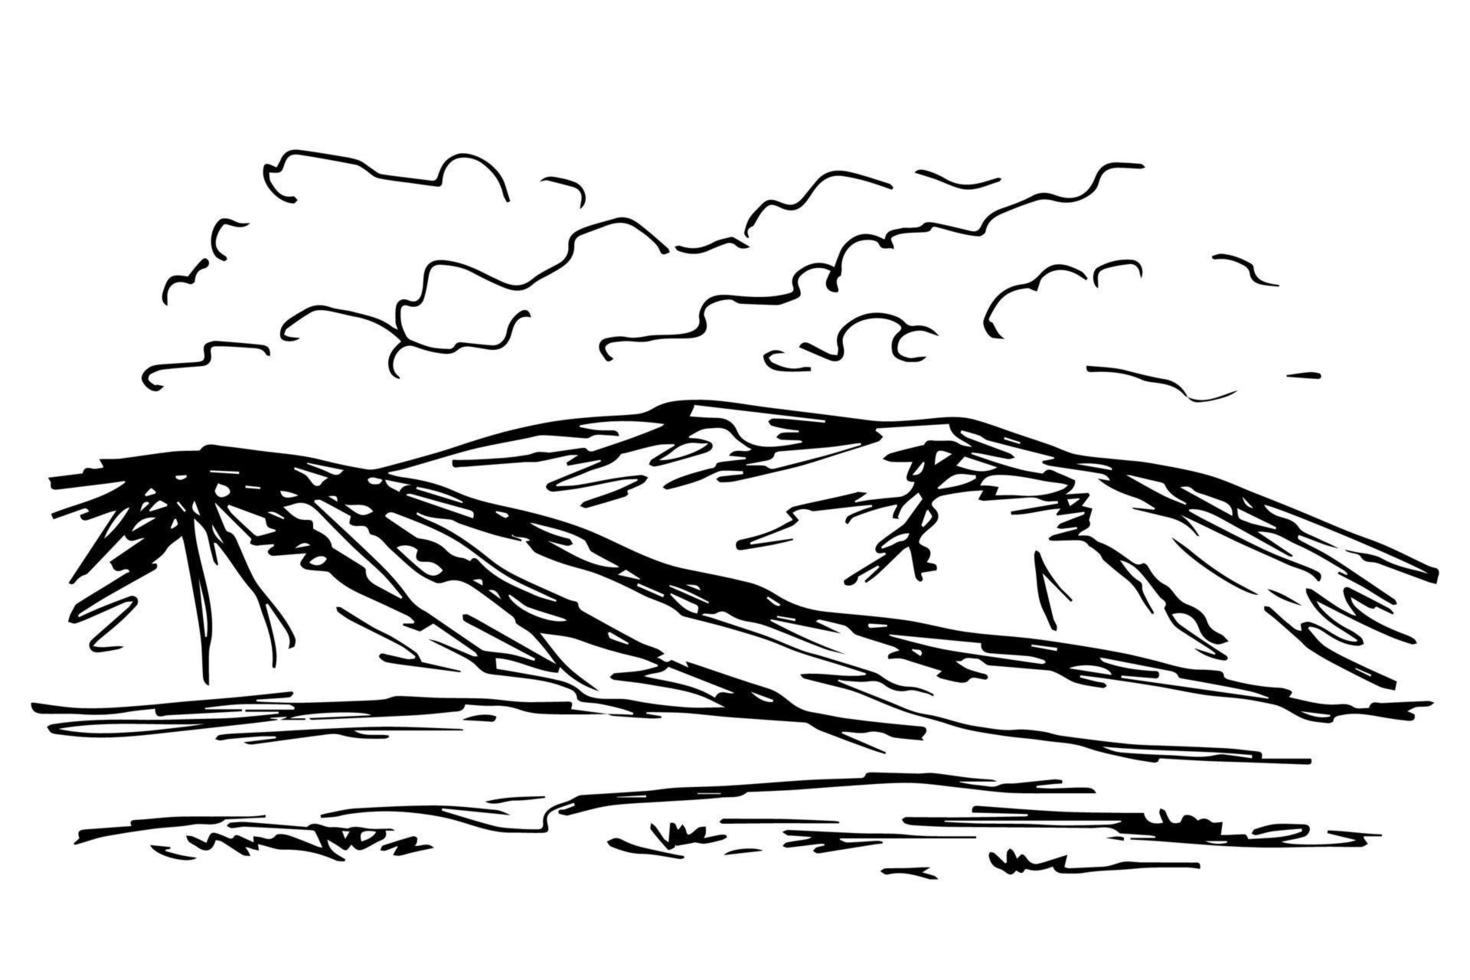 dibujo de tinta vectorial simple en estilo de grabado. silueta de montañas en el horizonte, nubes, colinas, naturaleza, estribaciones. paisaje rocoso, vida salvaje. vector